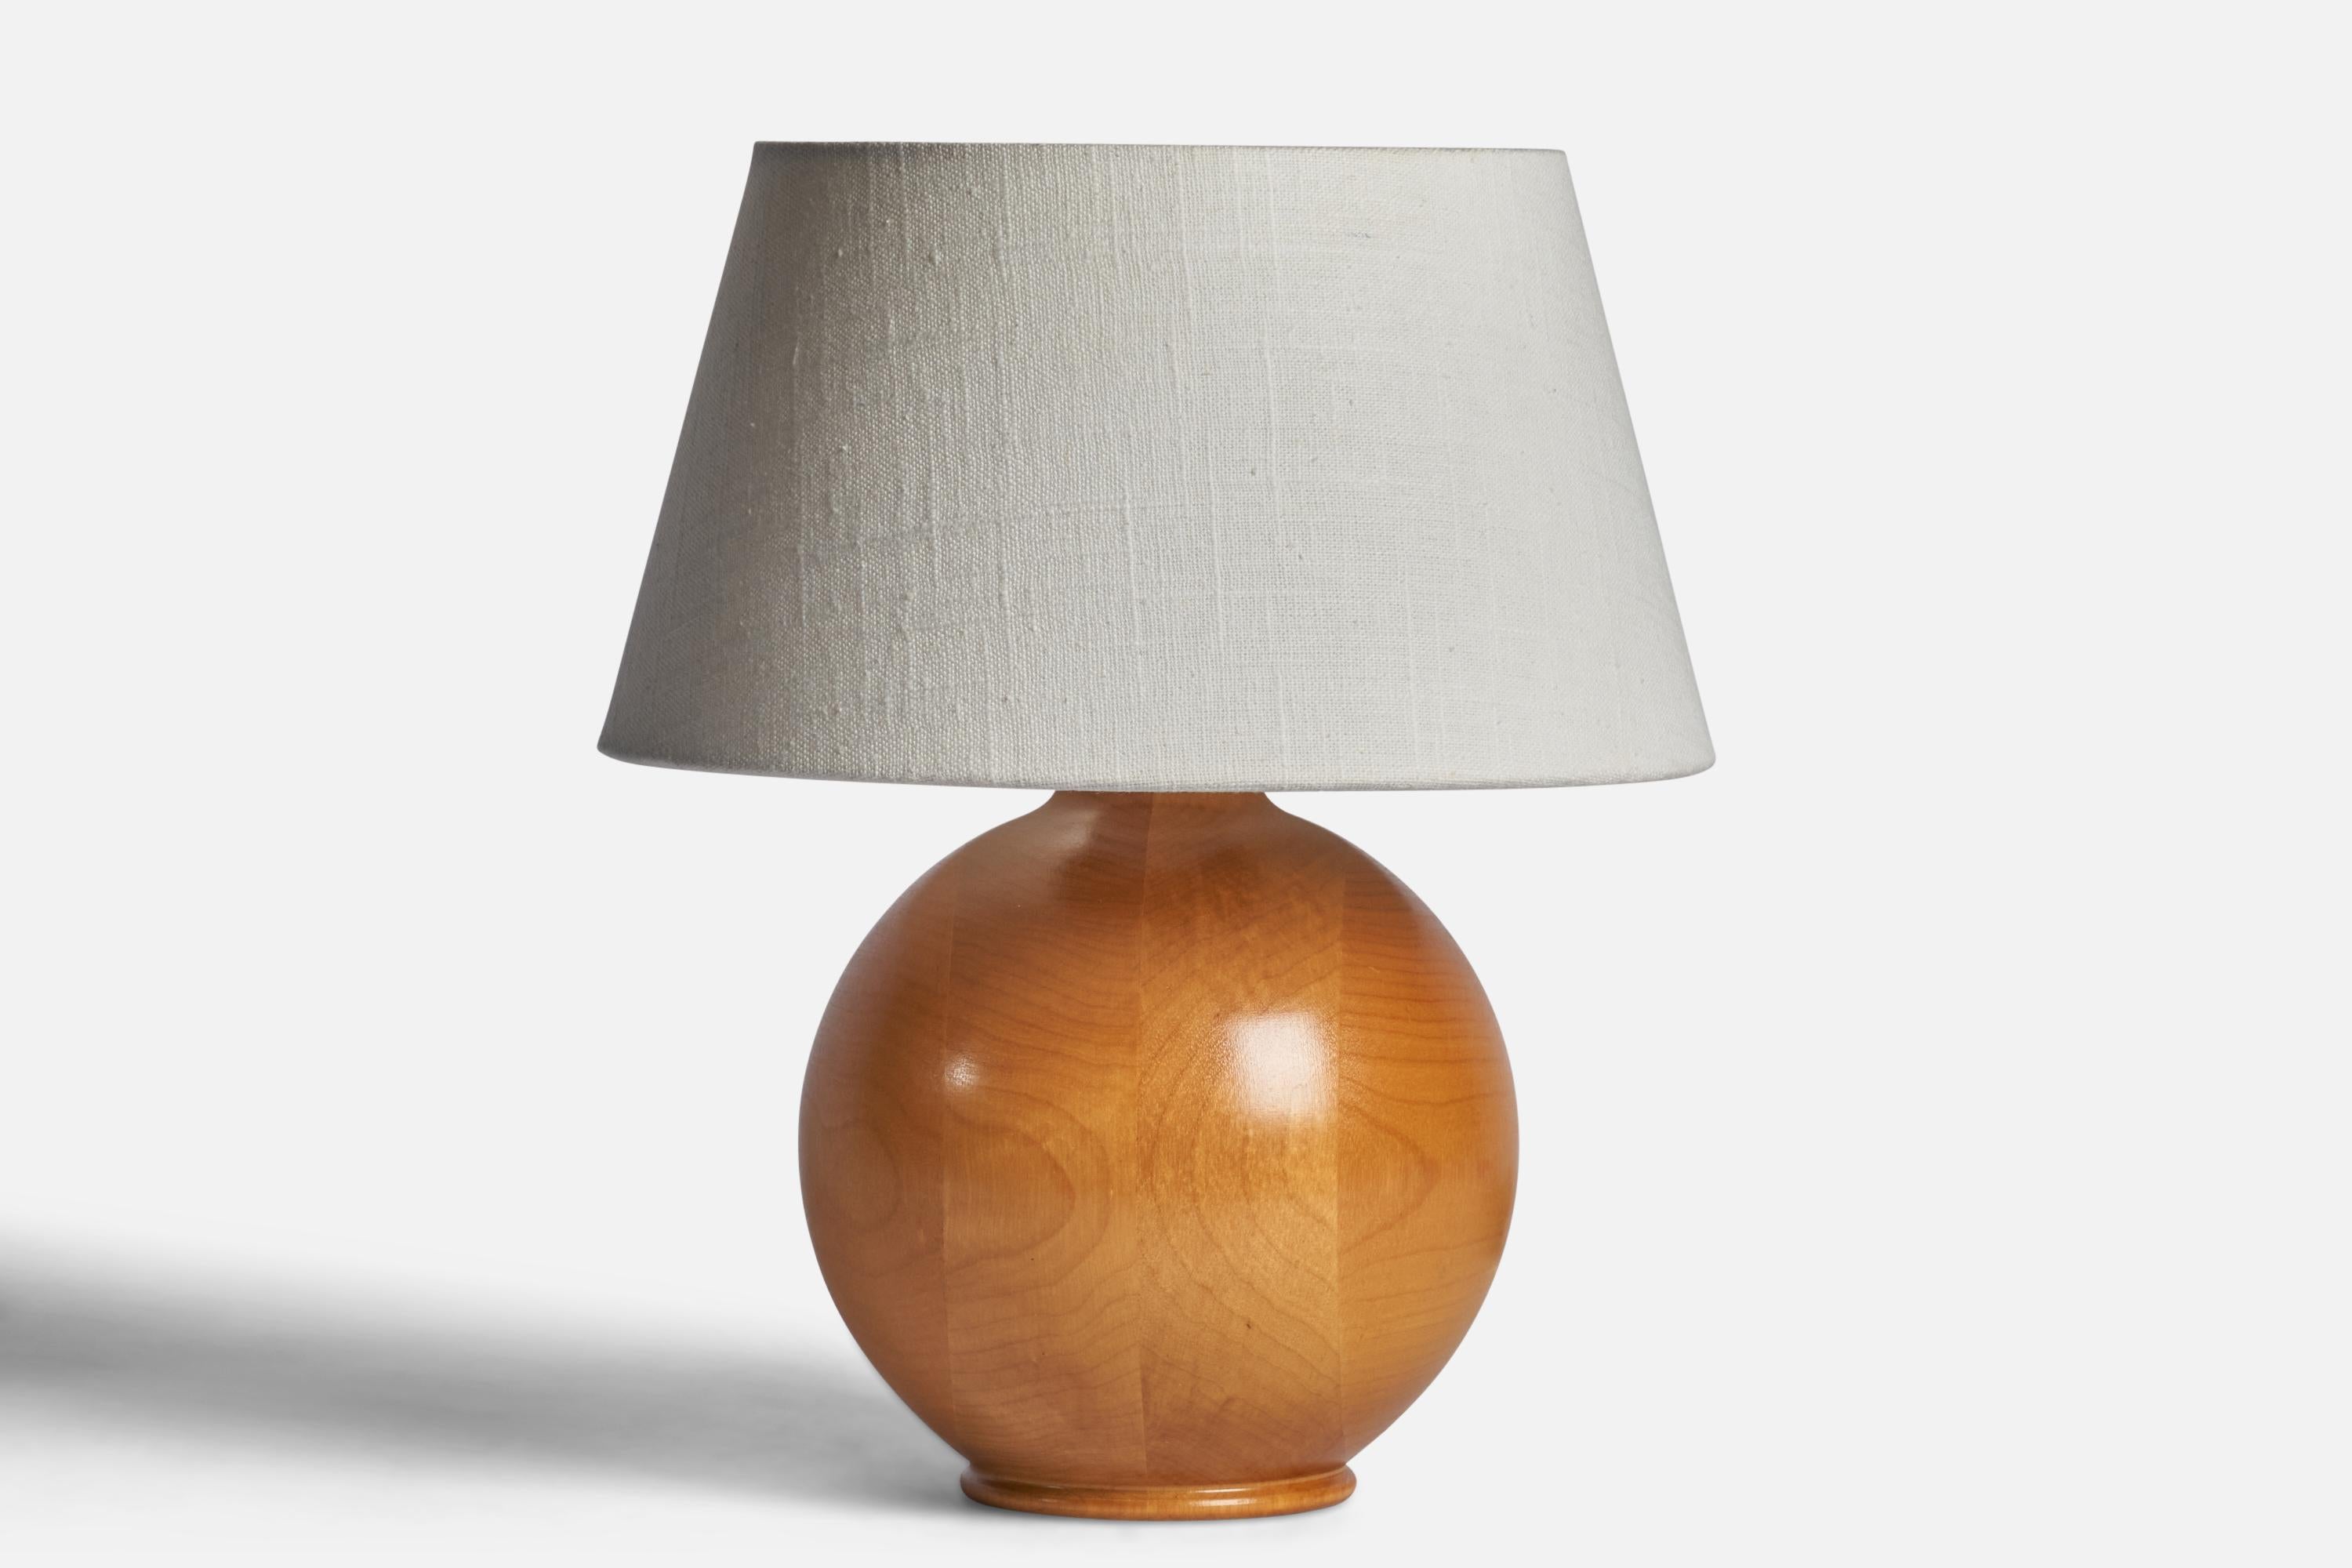 Tischlampe aus Kiefernholz, entworfen und hergestellt in Schweden, ca. 1960er Jahre.

Abmessungen der Lampe (Zoll): 9